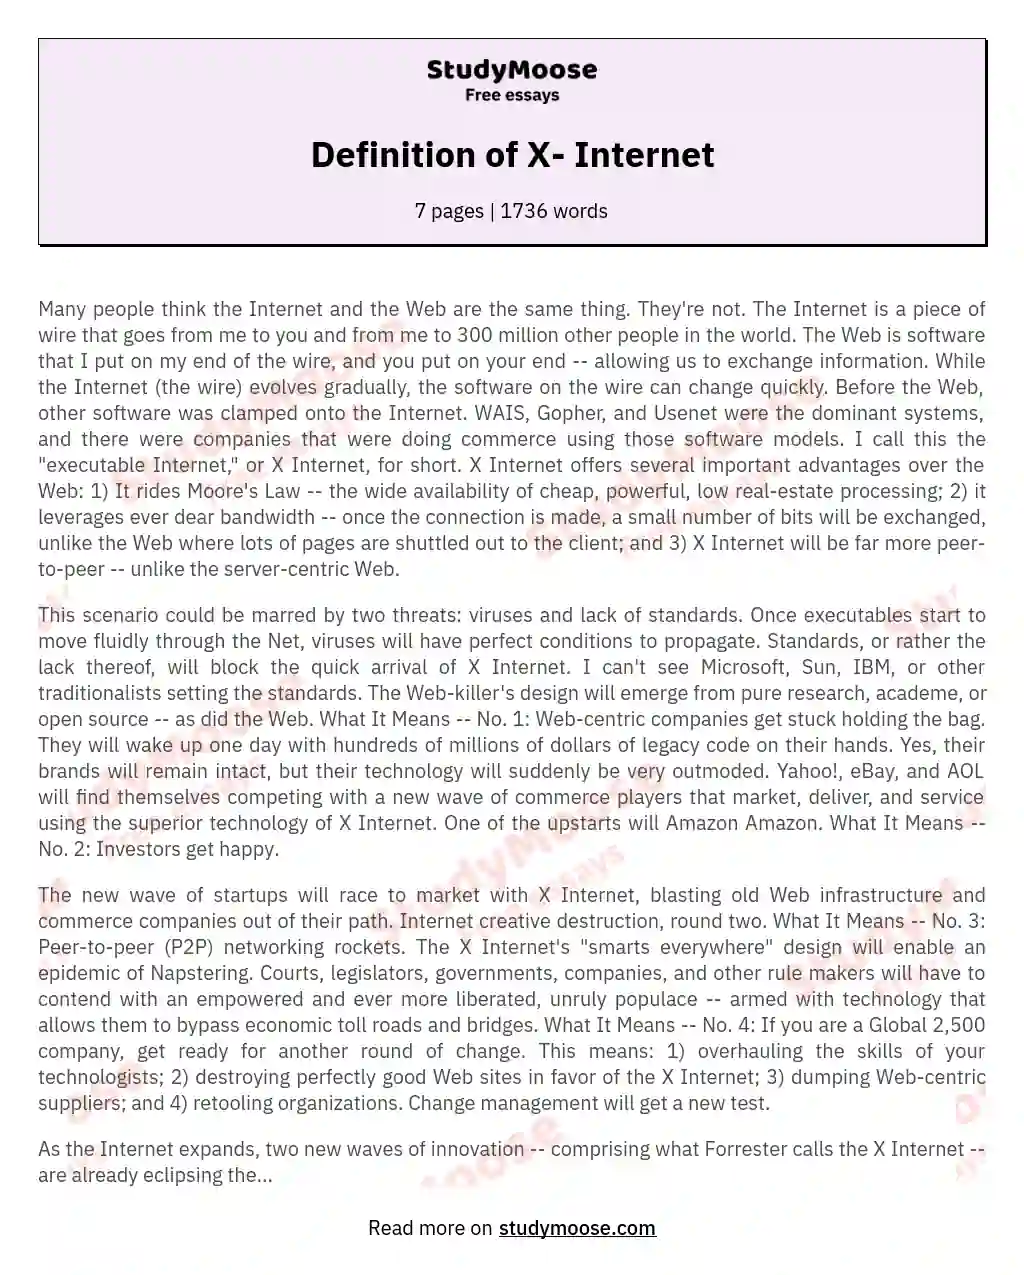 Definition of X- Internet essay